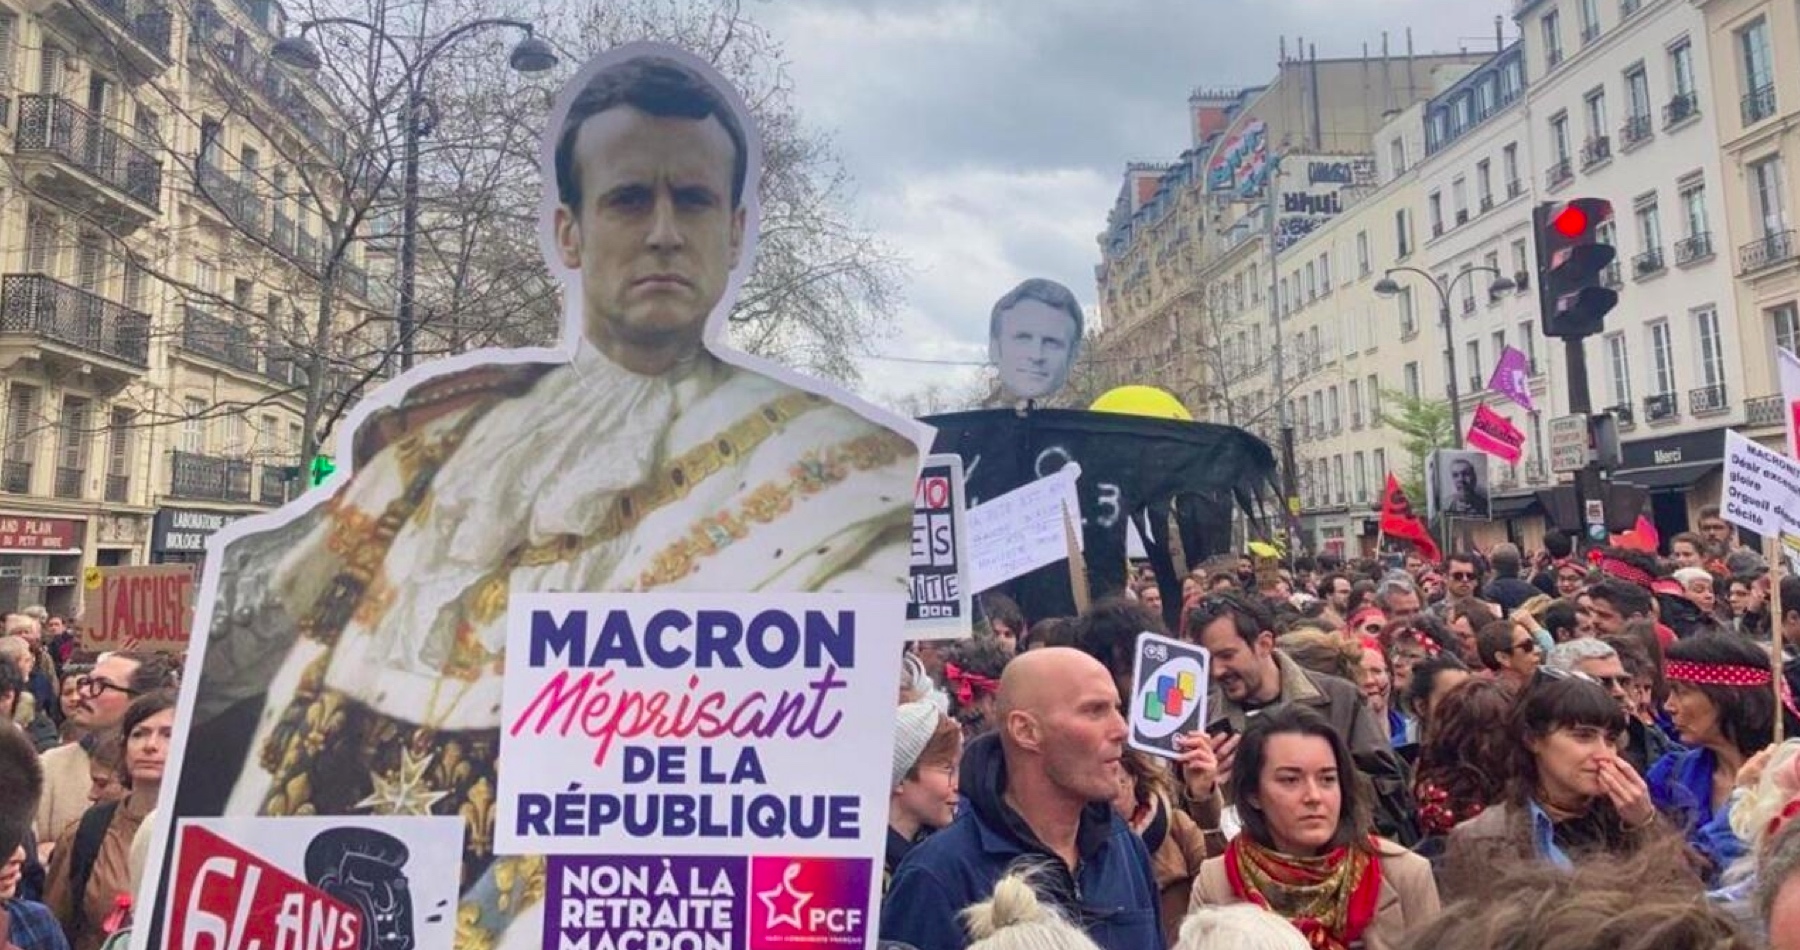 VIDEO: Milióny Francúzov sa búria proti arogantnému Macronovi a jeho nenávidenému režimu, ktorý napriek odporu ľudí bezohľadne pretláča dôchodkovú reformu. Francúzska polícia brutálne proti demonštrantom zasiahla, keď voči nim použila obušky, vodné delá a slzotvorný plyn